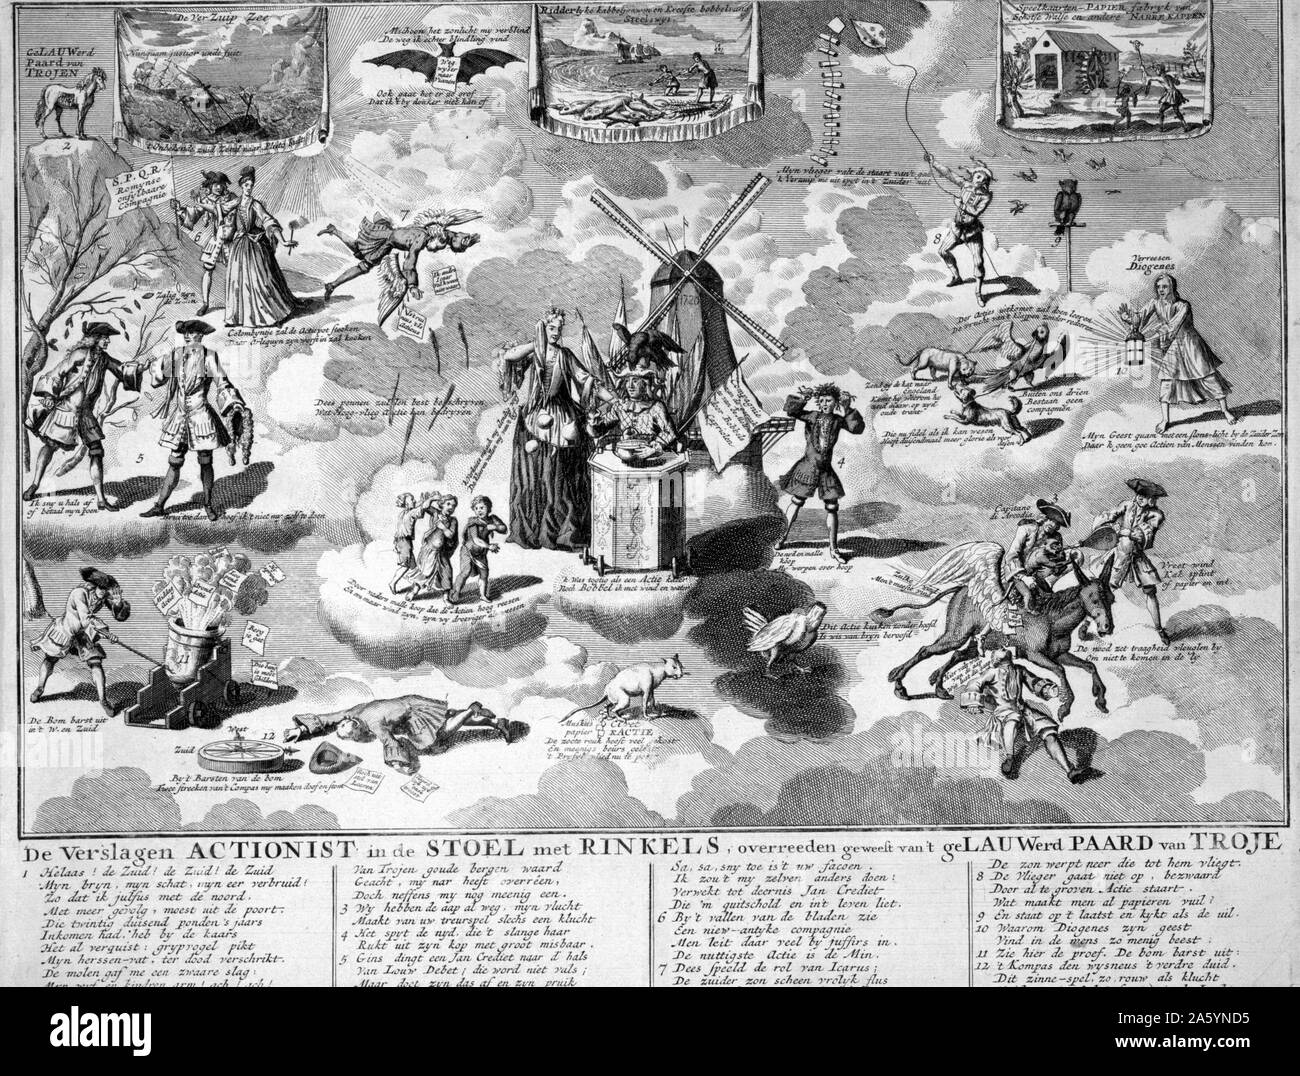 'De verslagen Aktionistischen in de stoel met rinkels, overreeden geweest van't geLauwerd Paard van Troje', 1720. graviert Satire auf die South Sea Company und andere bubble Pläne von 1720 in einer Sammlung niederländischer Satiren auf dem Schema. Gravur. Stockfoto